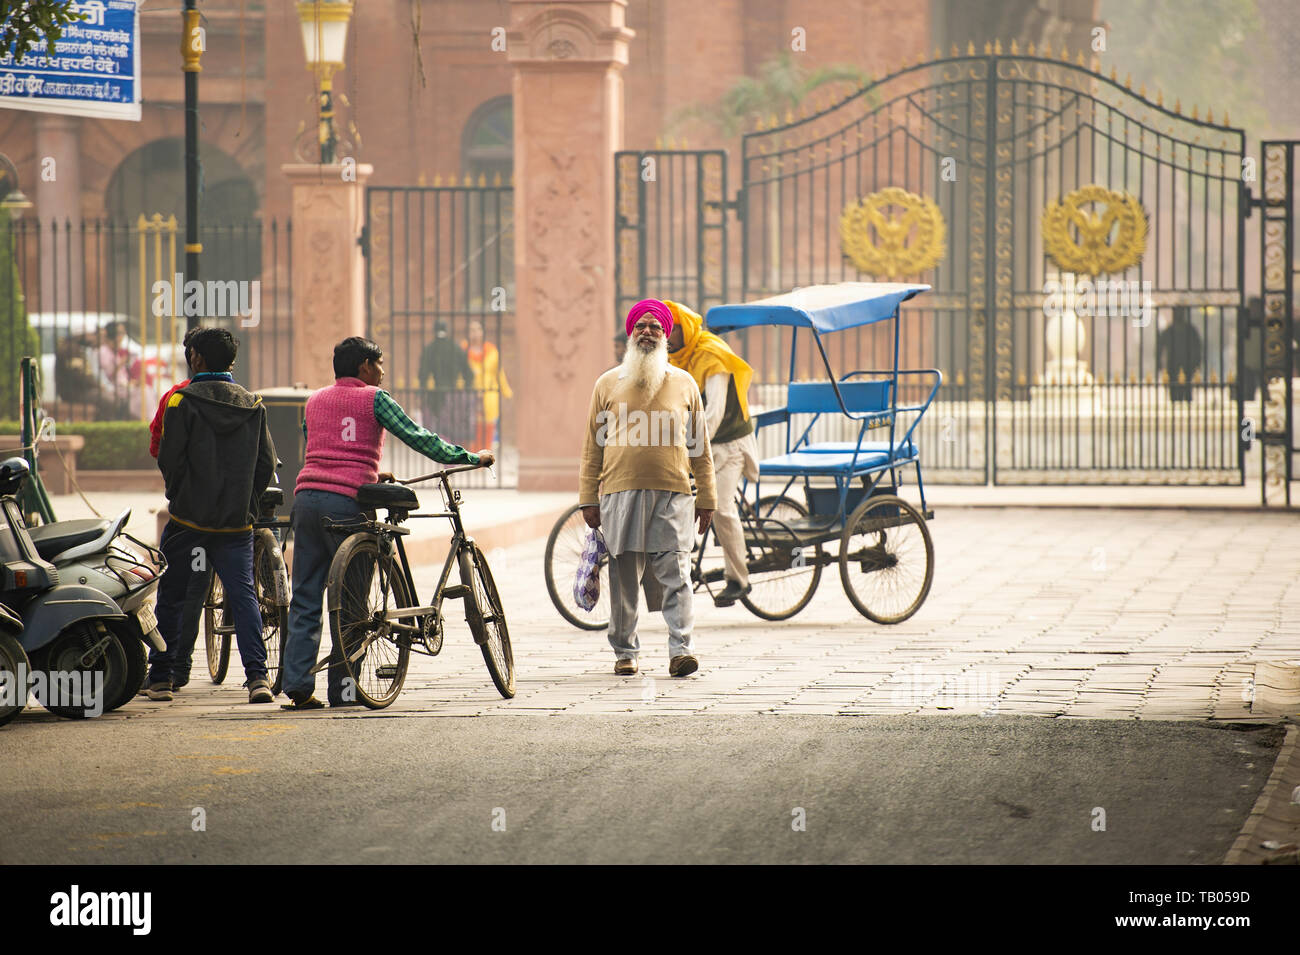 Les Sikhs et les touristes se promènent dans les rues d'Amritsar, Punjab, en Inde. Banque D'Images